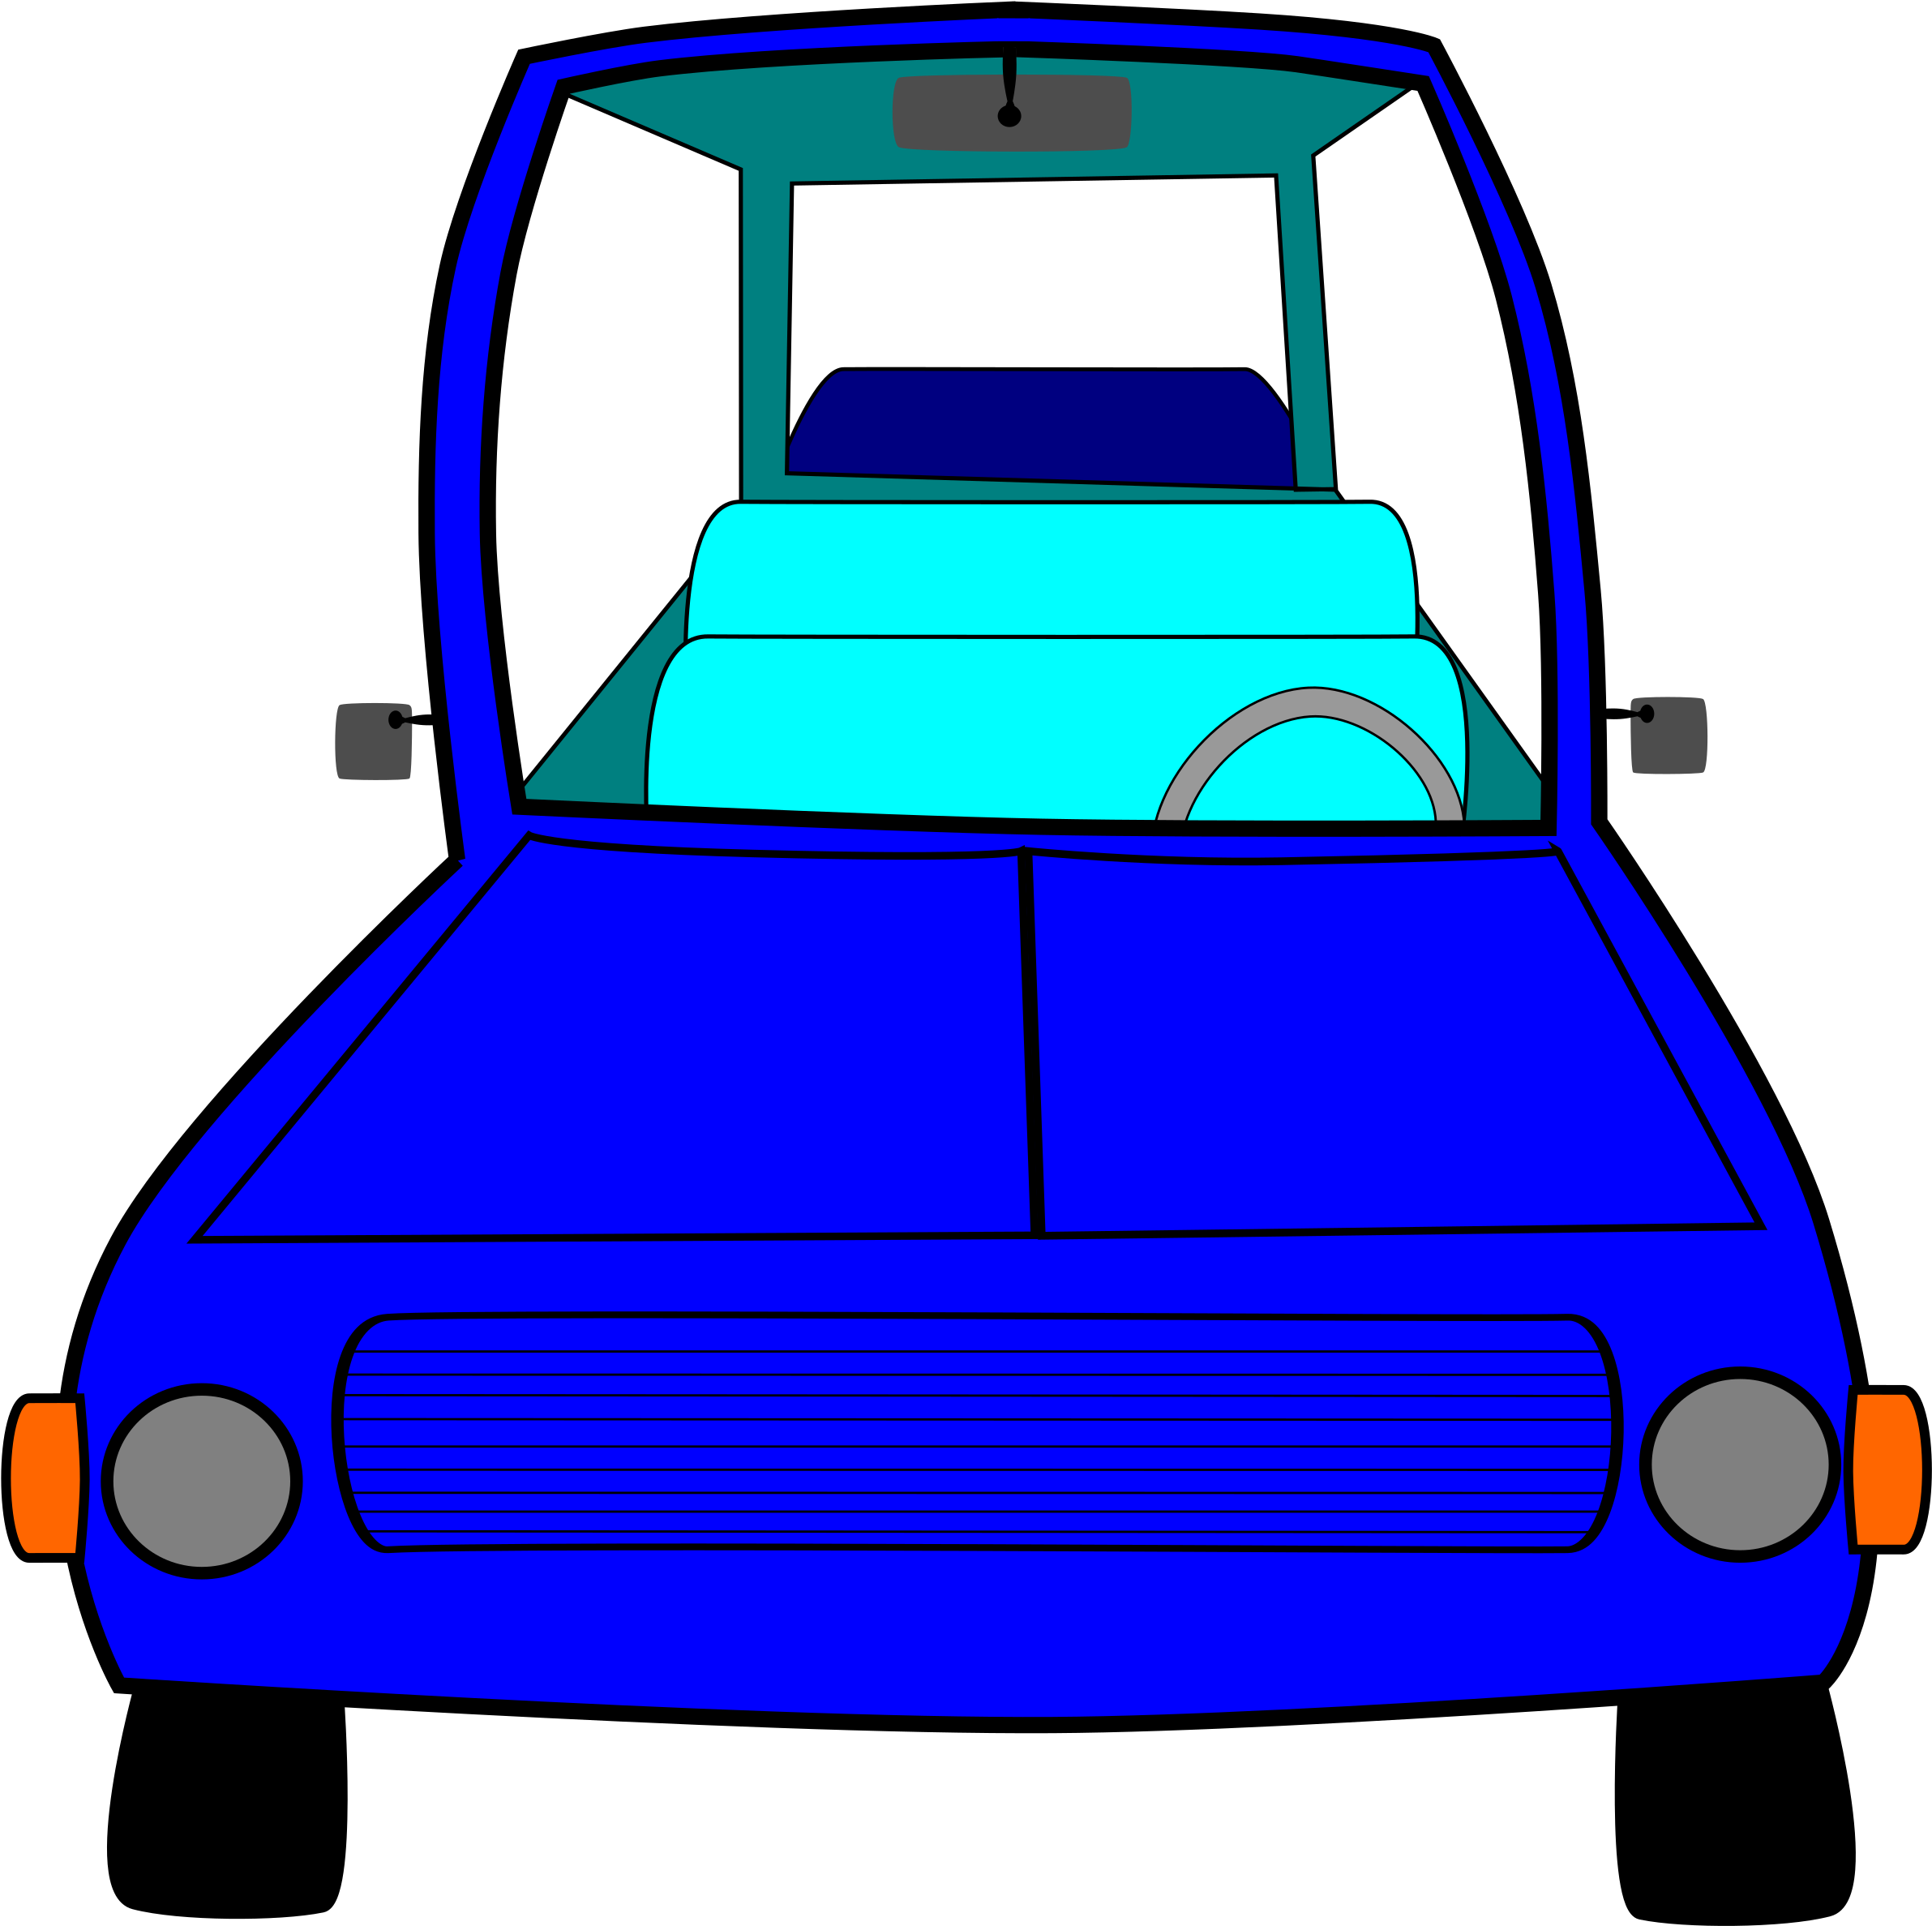 Cartoon Car PNG Images